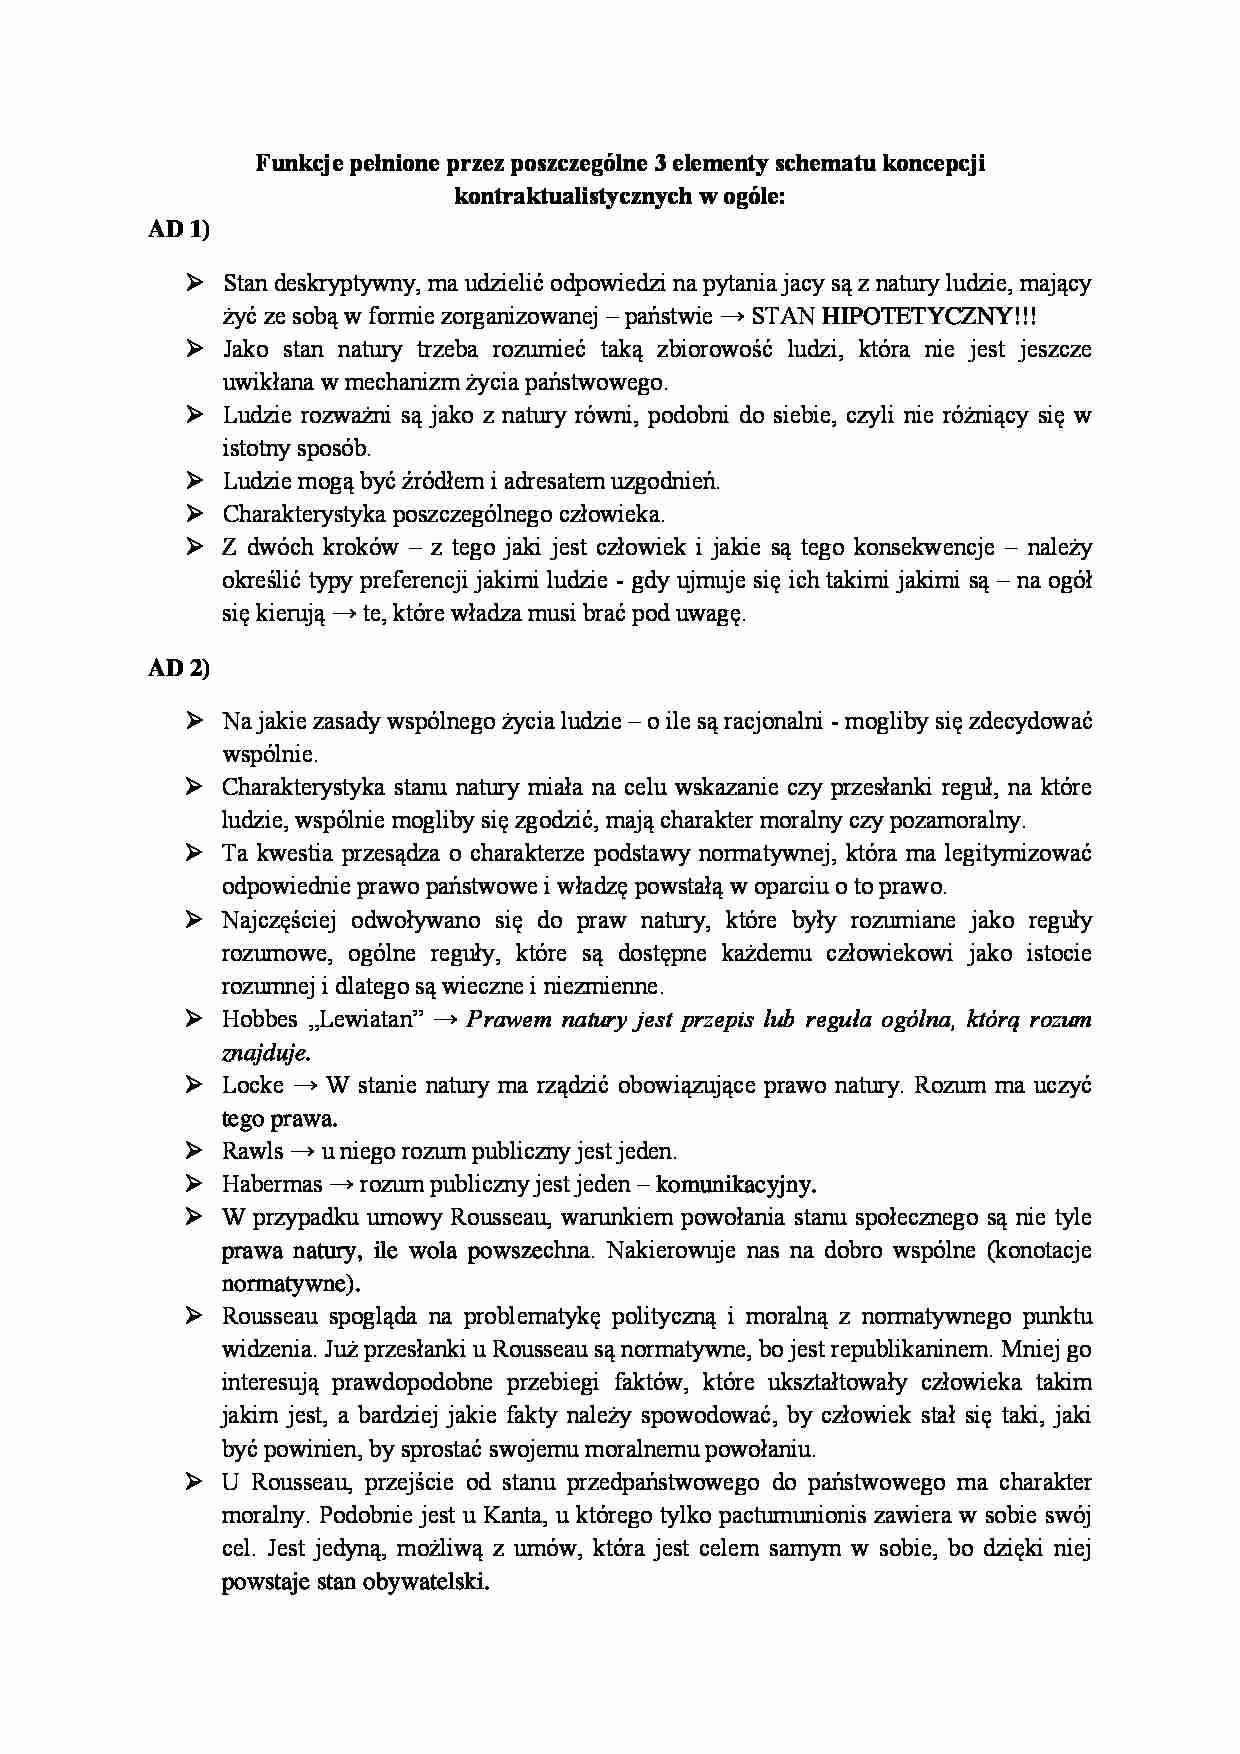 Koncepcja kontraktualistyczna - schematy  - strona 1